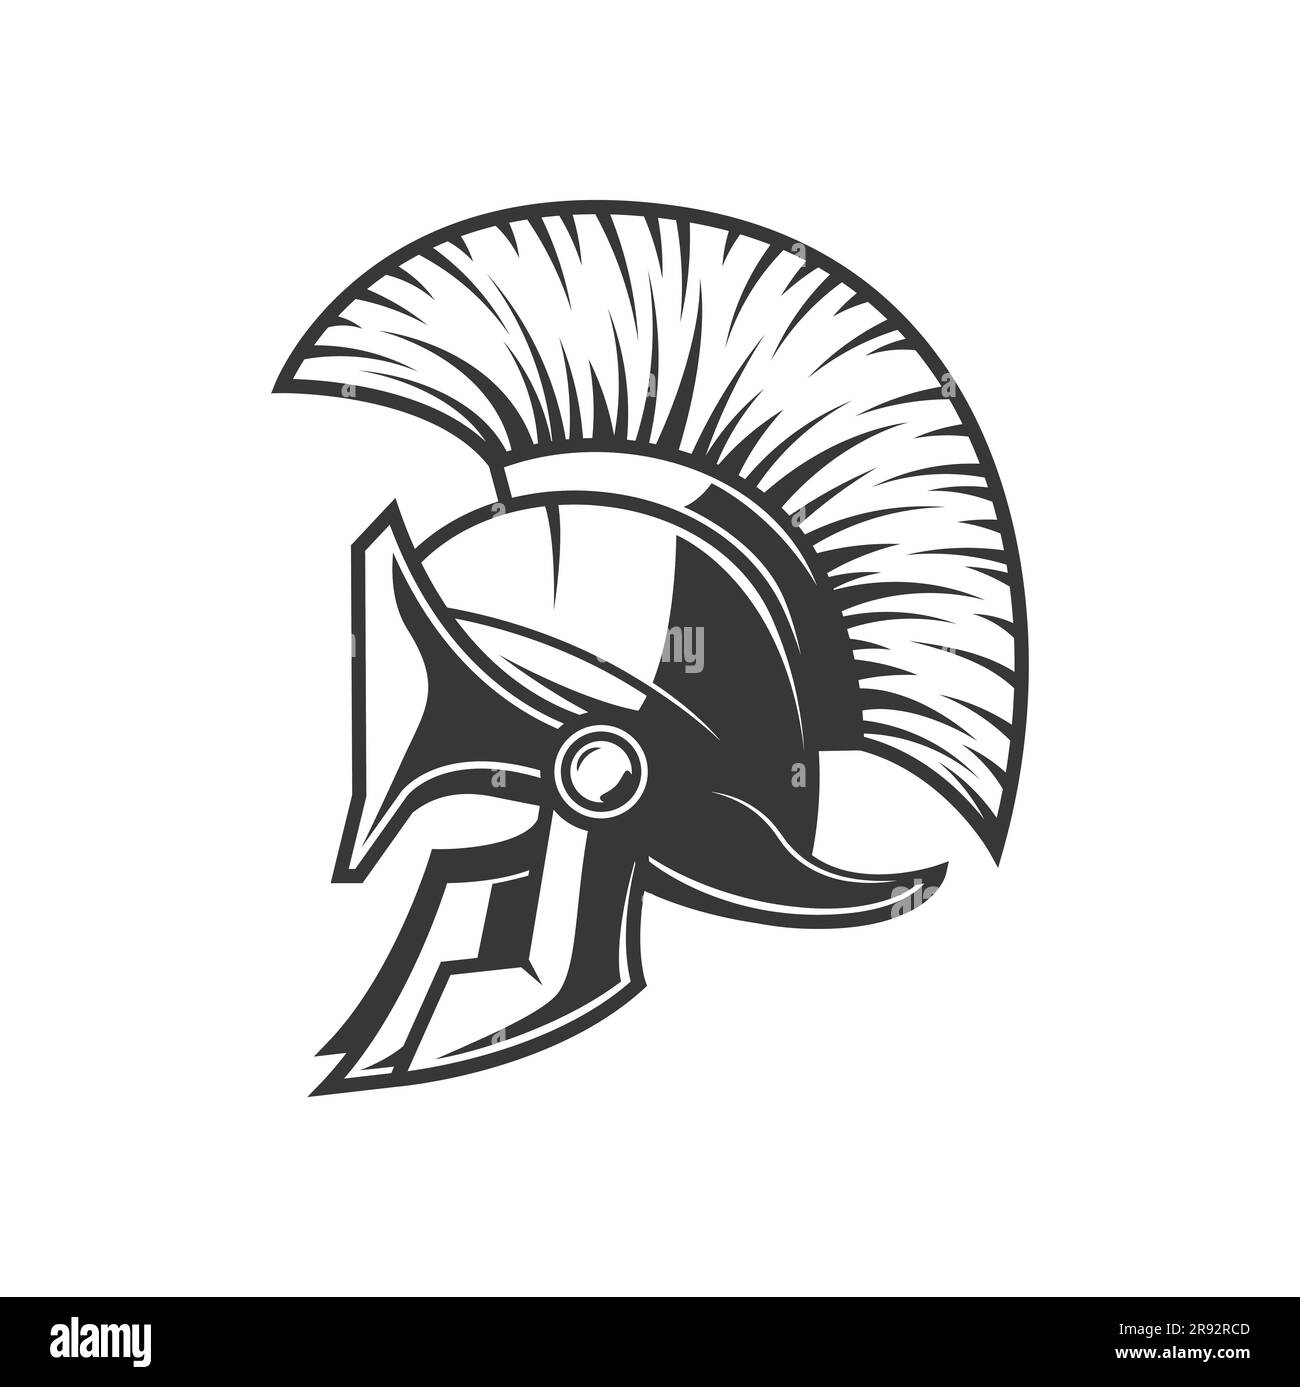 Spartan Helm, römischer Krieger oder Sparta griechischer Gladiatorenkopfpanzer, Vektorsymbol. Trojaner-Ritter oder Zenturion-Gladiator-Rüstungsmaske, mittelalterlicher Krieger-Gesichtsschild mit Gefieder Stock Vektor